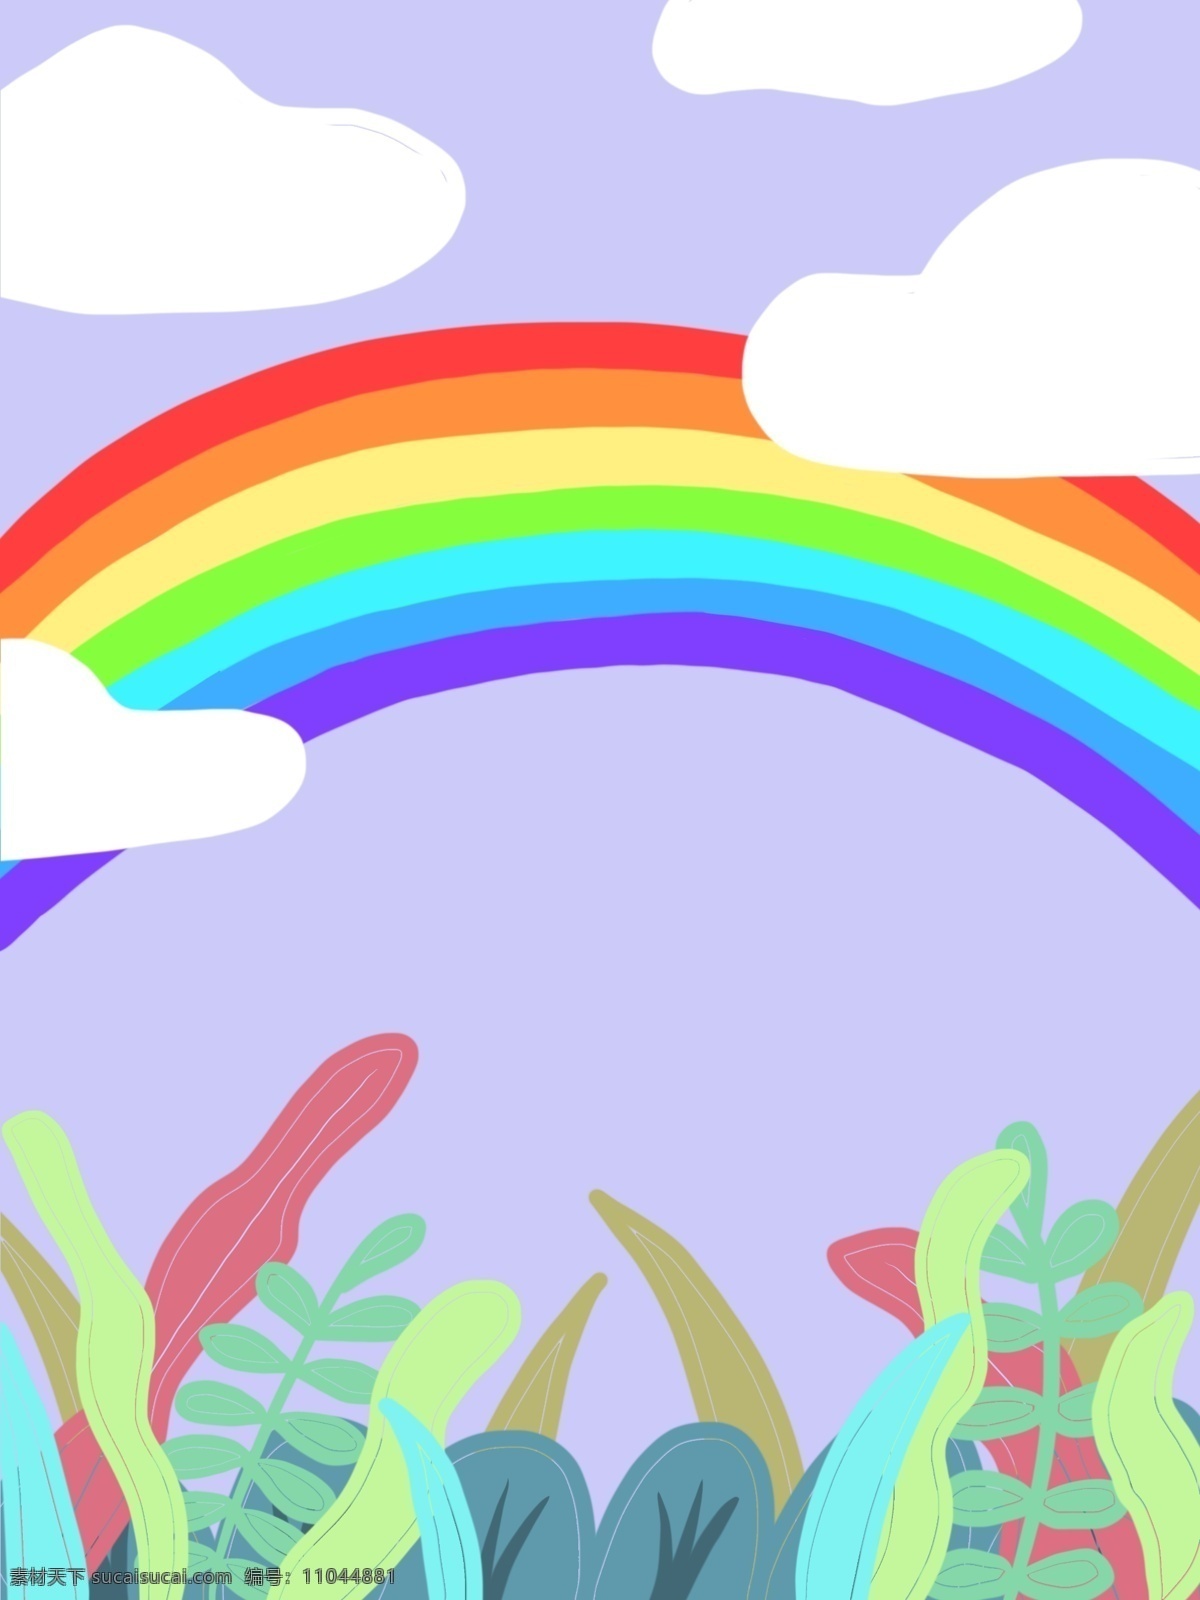 彩色 户外 彩虹 背景 植物 天空 云朵 卡通 创意 装饰 设计背景 海报背景 简约 图案 背景素材